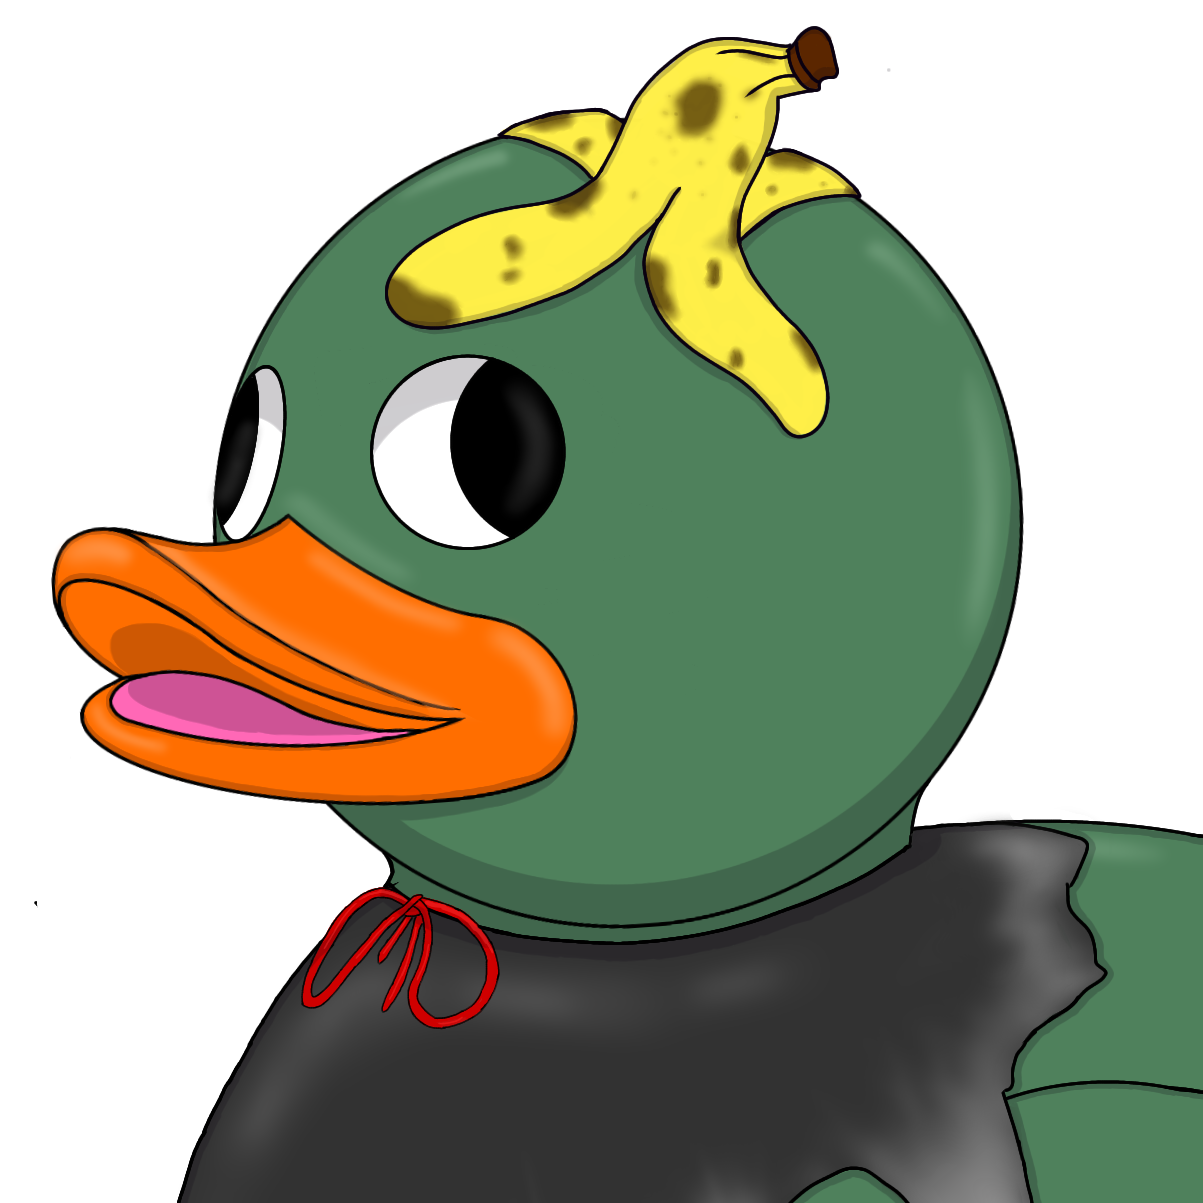 Duckster